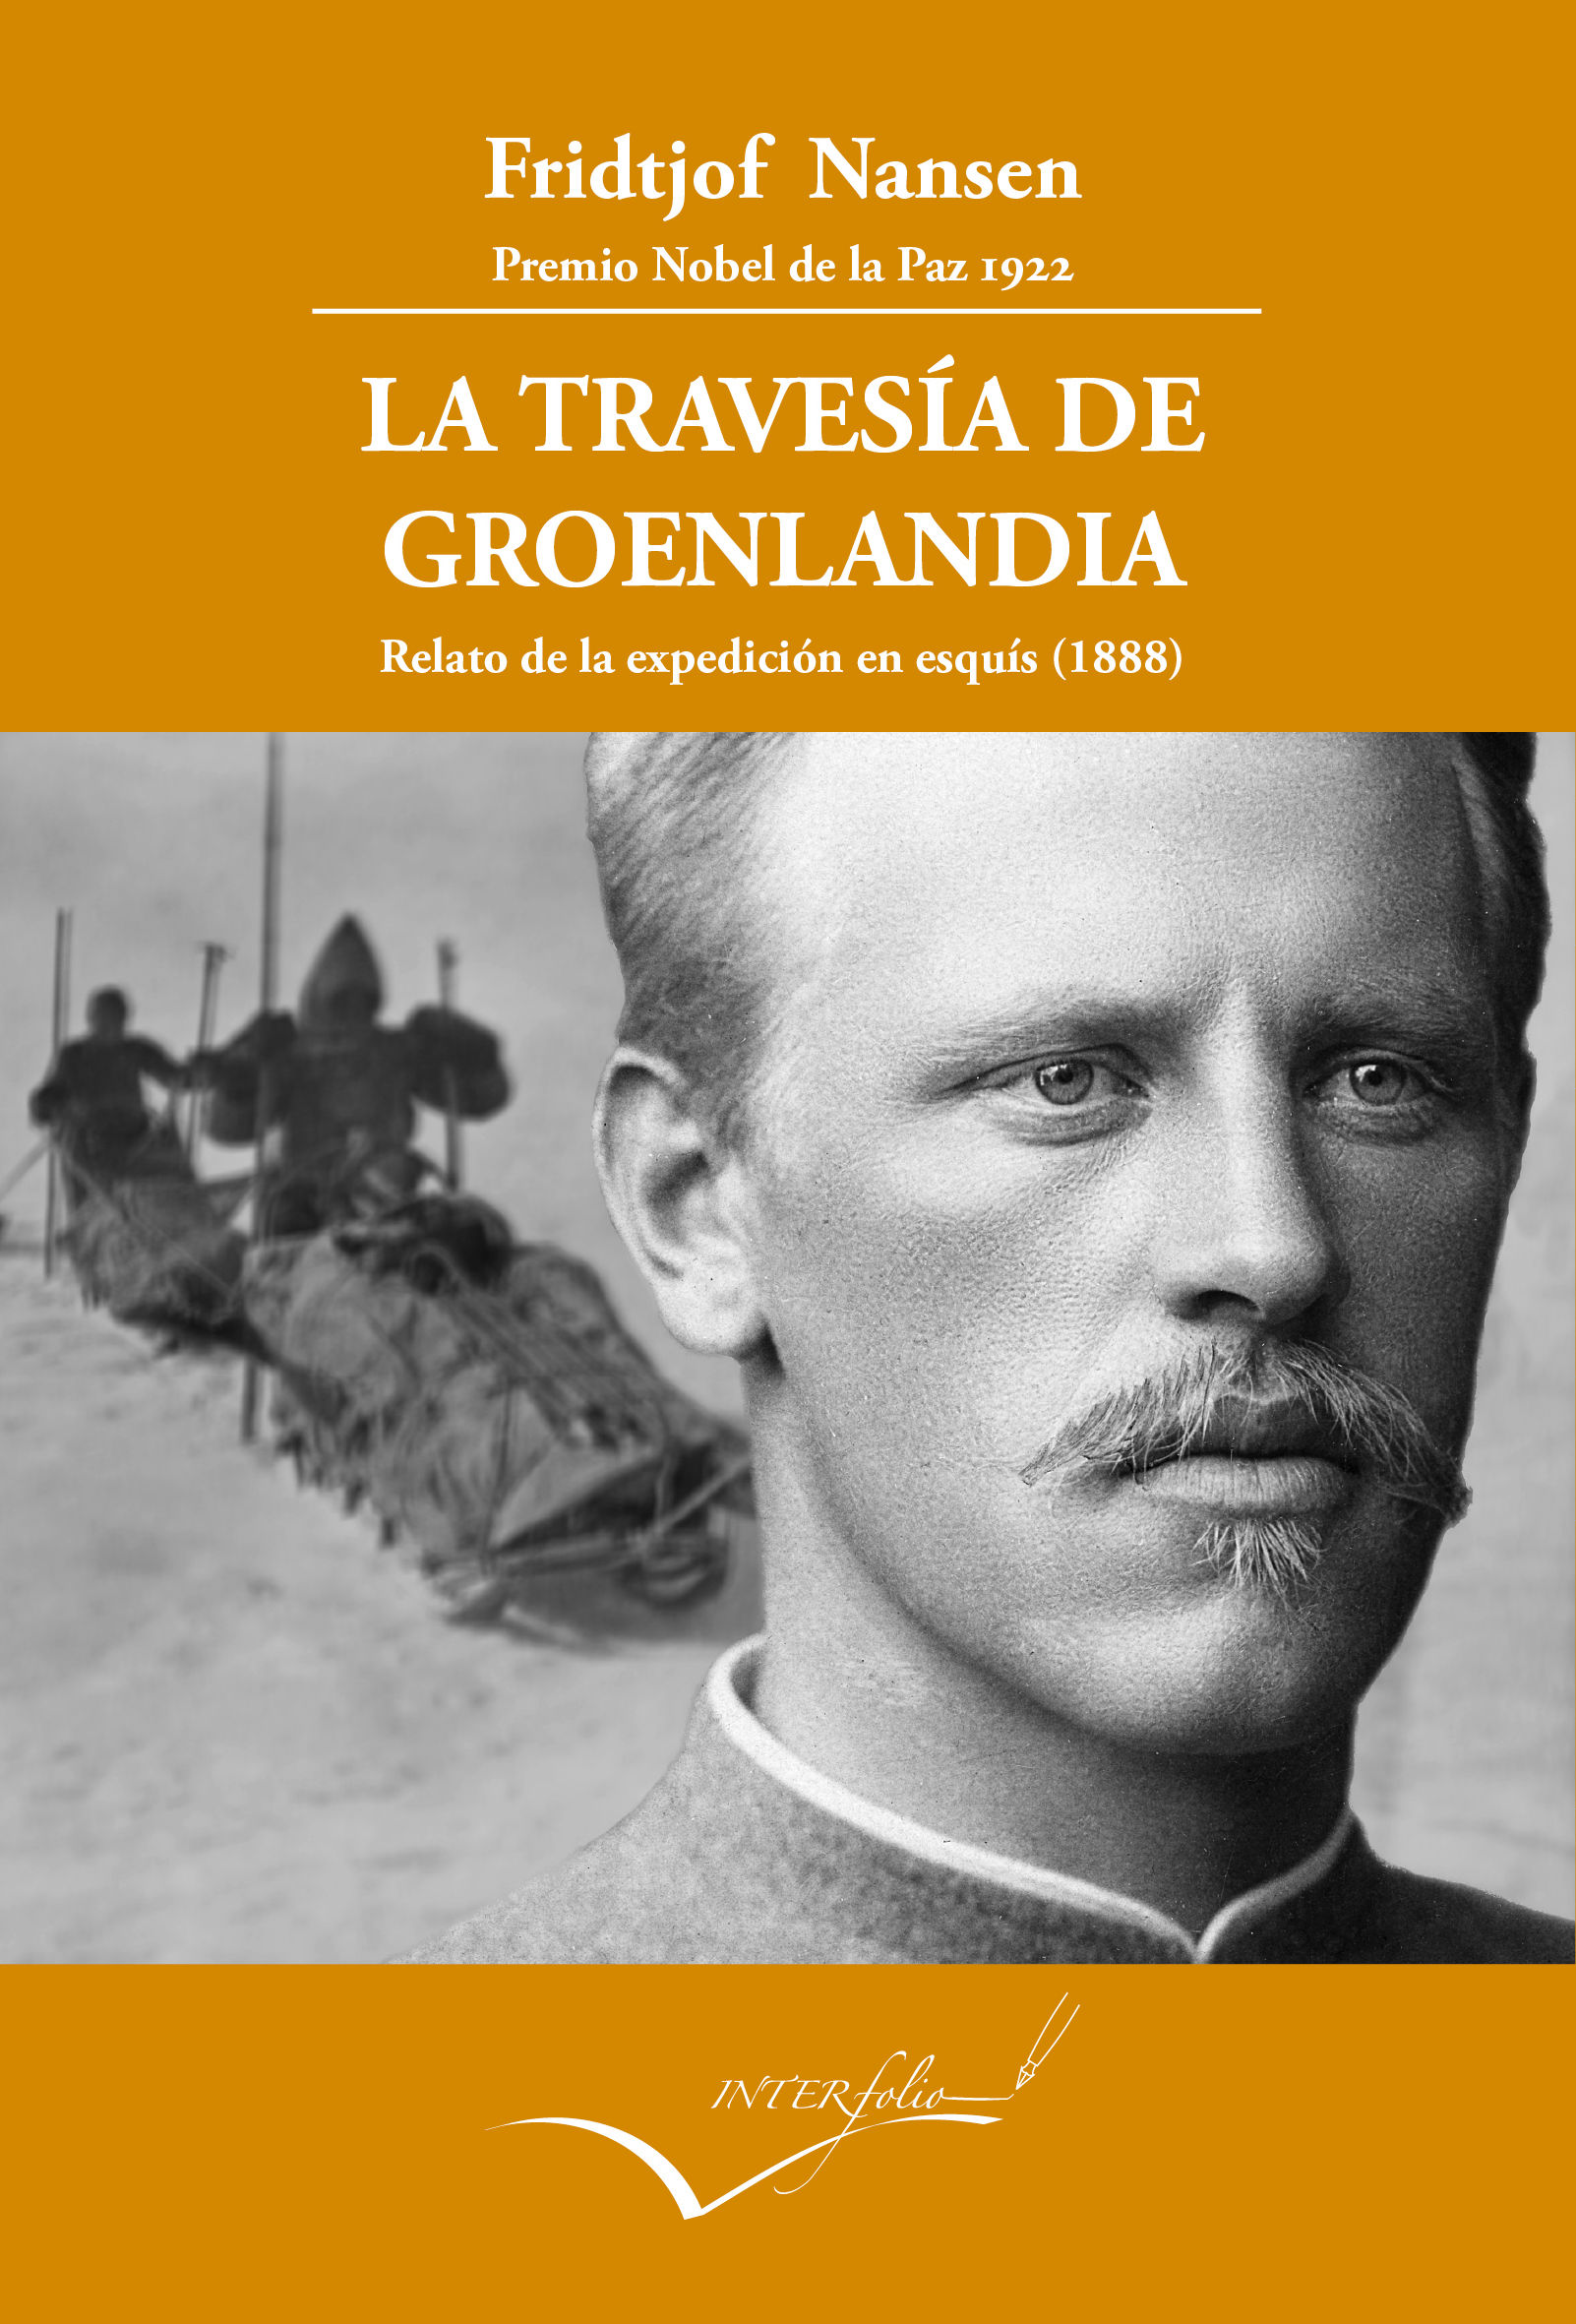 LA TRAVESÍA DE GROENLANDIA. RELATO DE LA EXPEDICIÓN EN ESQUÍS (1888-89)